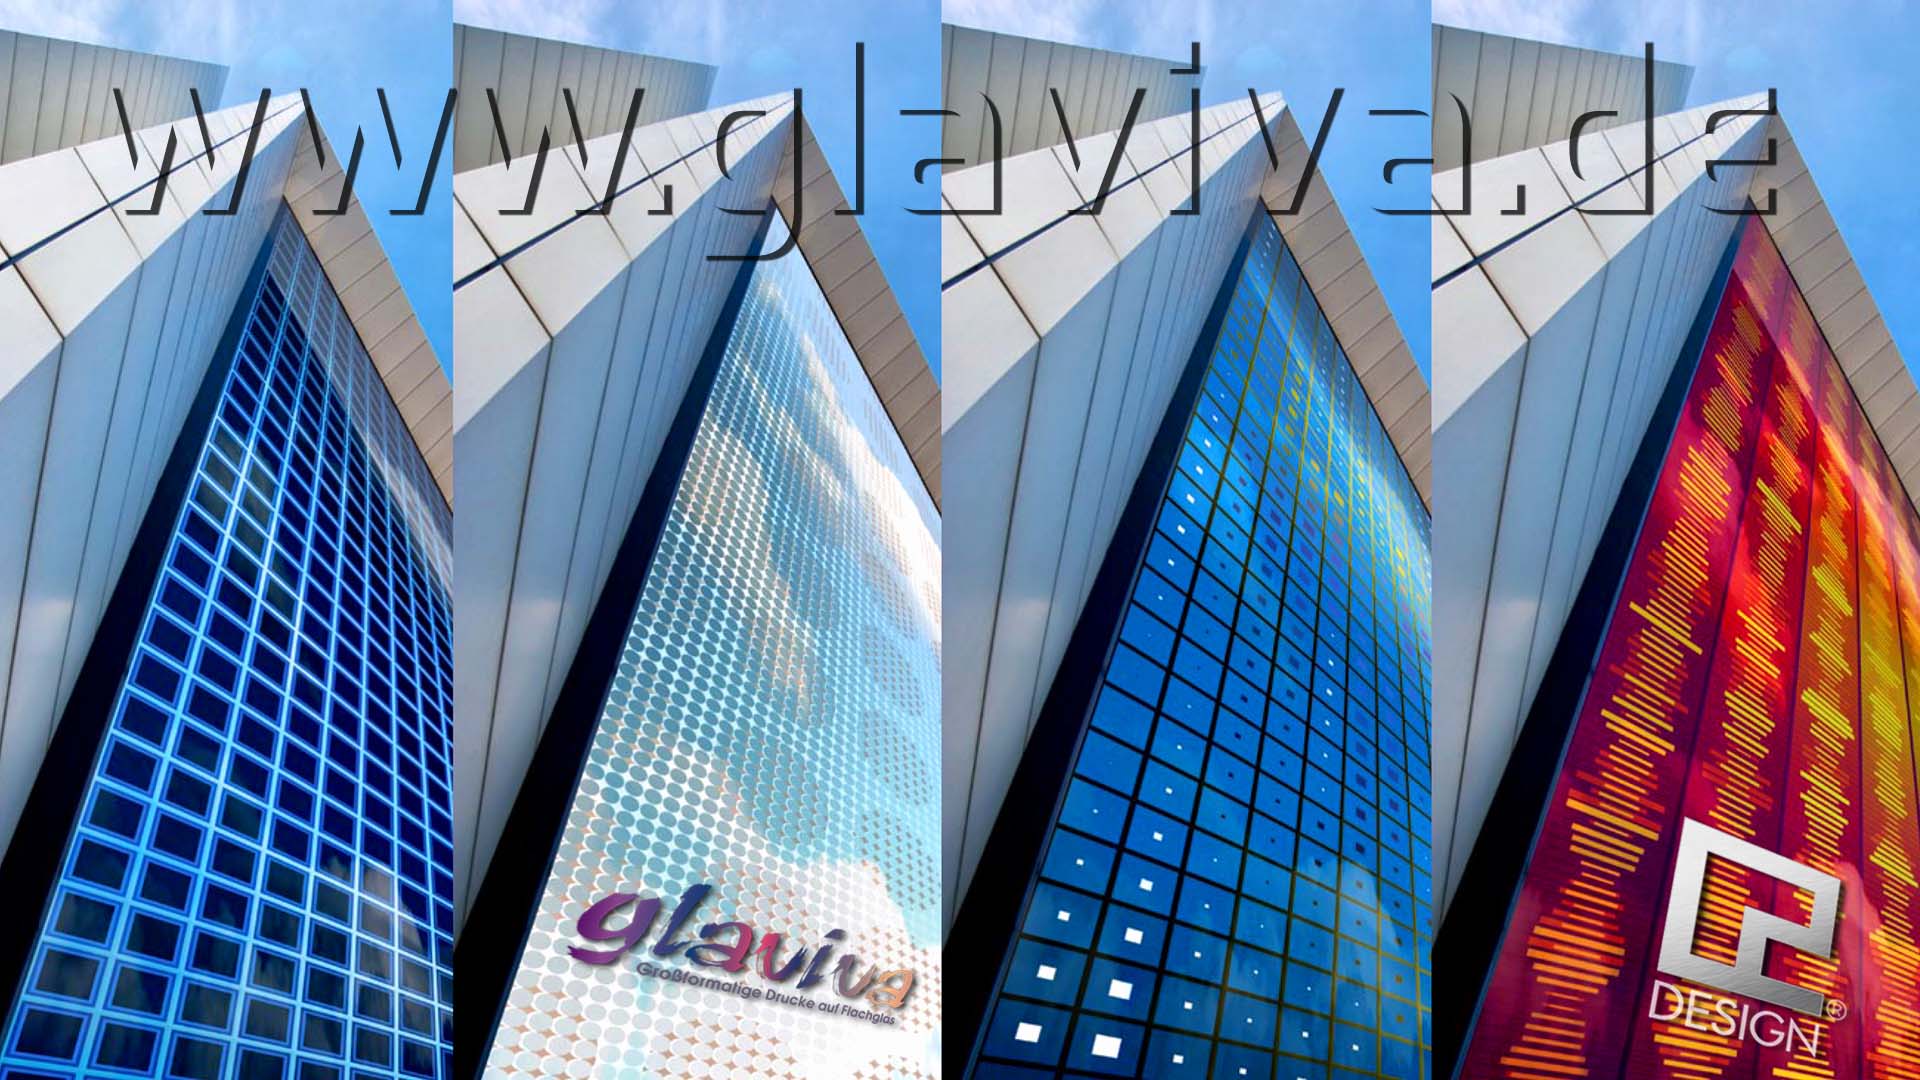 GLAVIVA • GLAS-ARCHITEKTUR • Interaktives Design von Glaviva zur digitalen Bedruckung von Glastreppen - Glastüren - Glastische - Küchenrückwände - Glasgeländer - Glasböden - Glasfassaden • C2 DESIGN INTERAKTIV • GLAVIVA - DIGITALDRUCK AUF GLAS